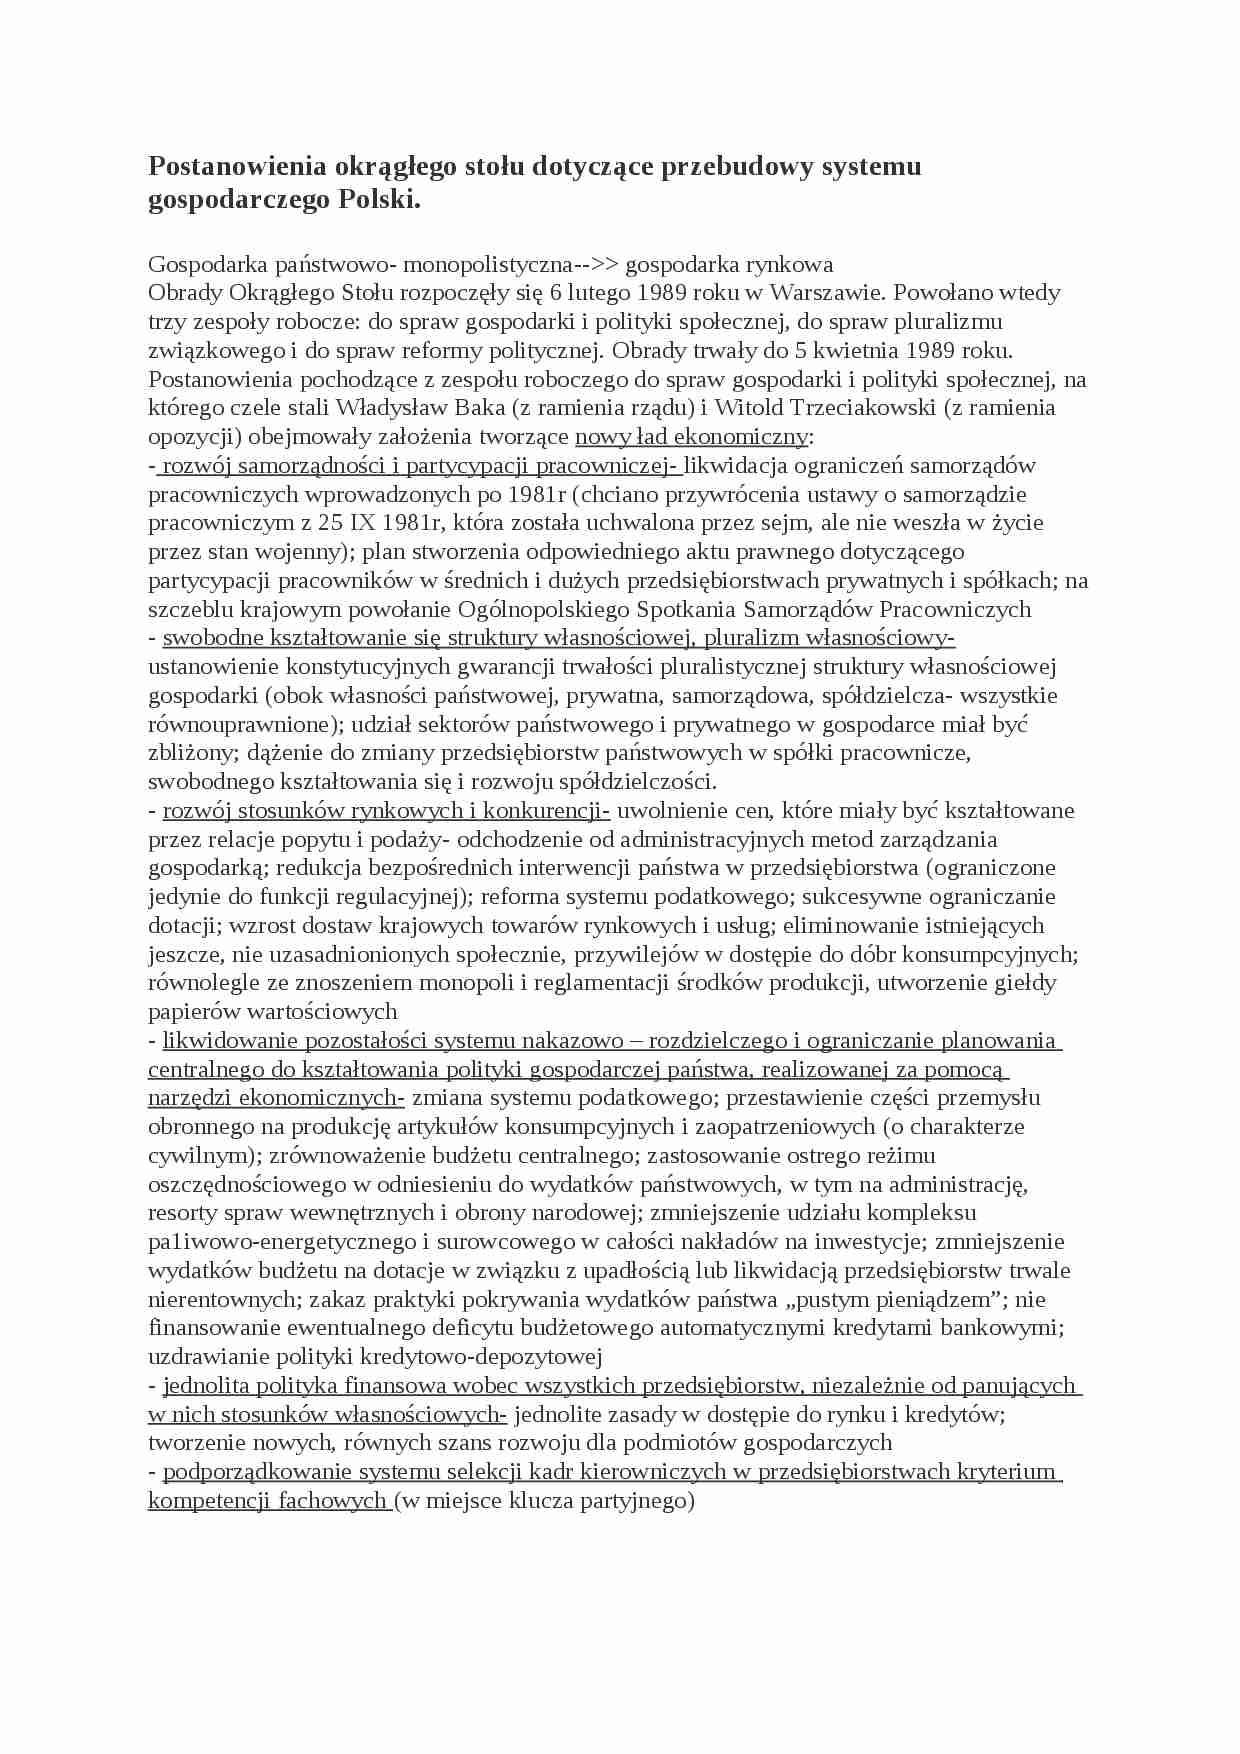 Postanowienia okrągłego stołu dotyczące przebudowy systemu gospodarczego Polski- opracowanie - strona 1